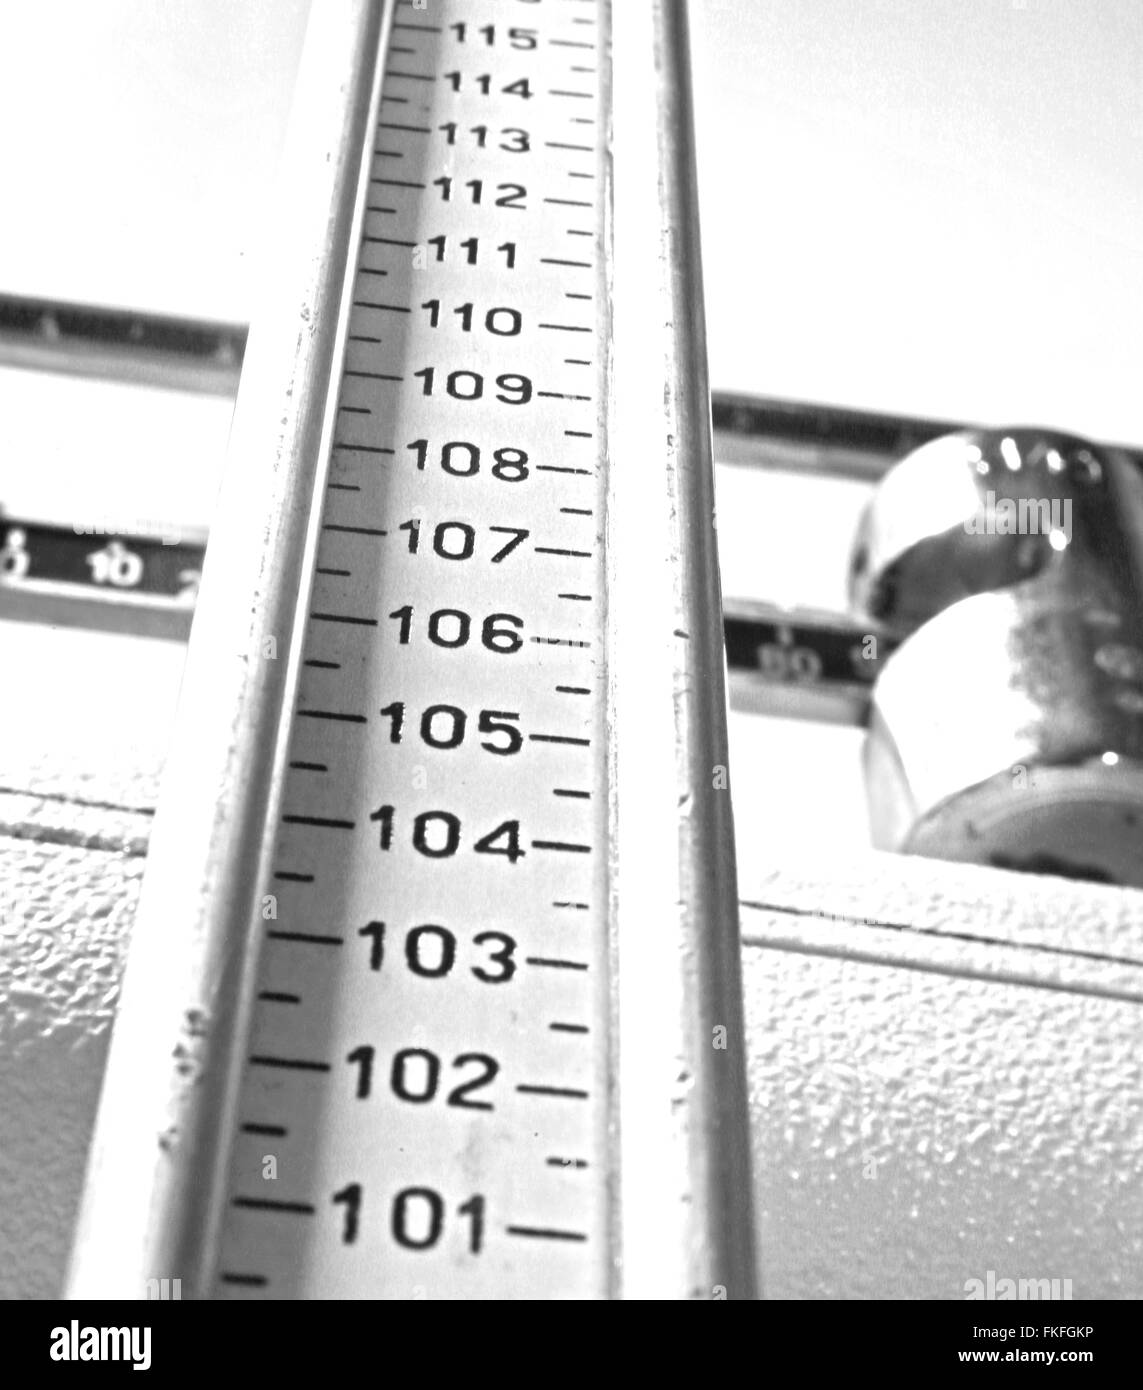 Lungo l'asta di misurazione per misurare l'altezza in un antico scale in dal medico della clinica Foto Stock